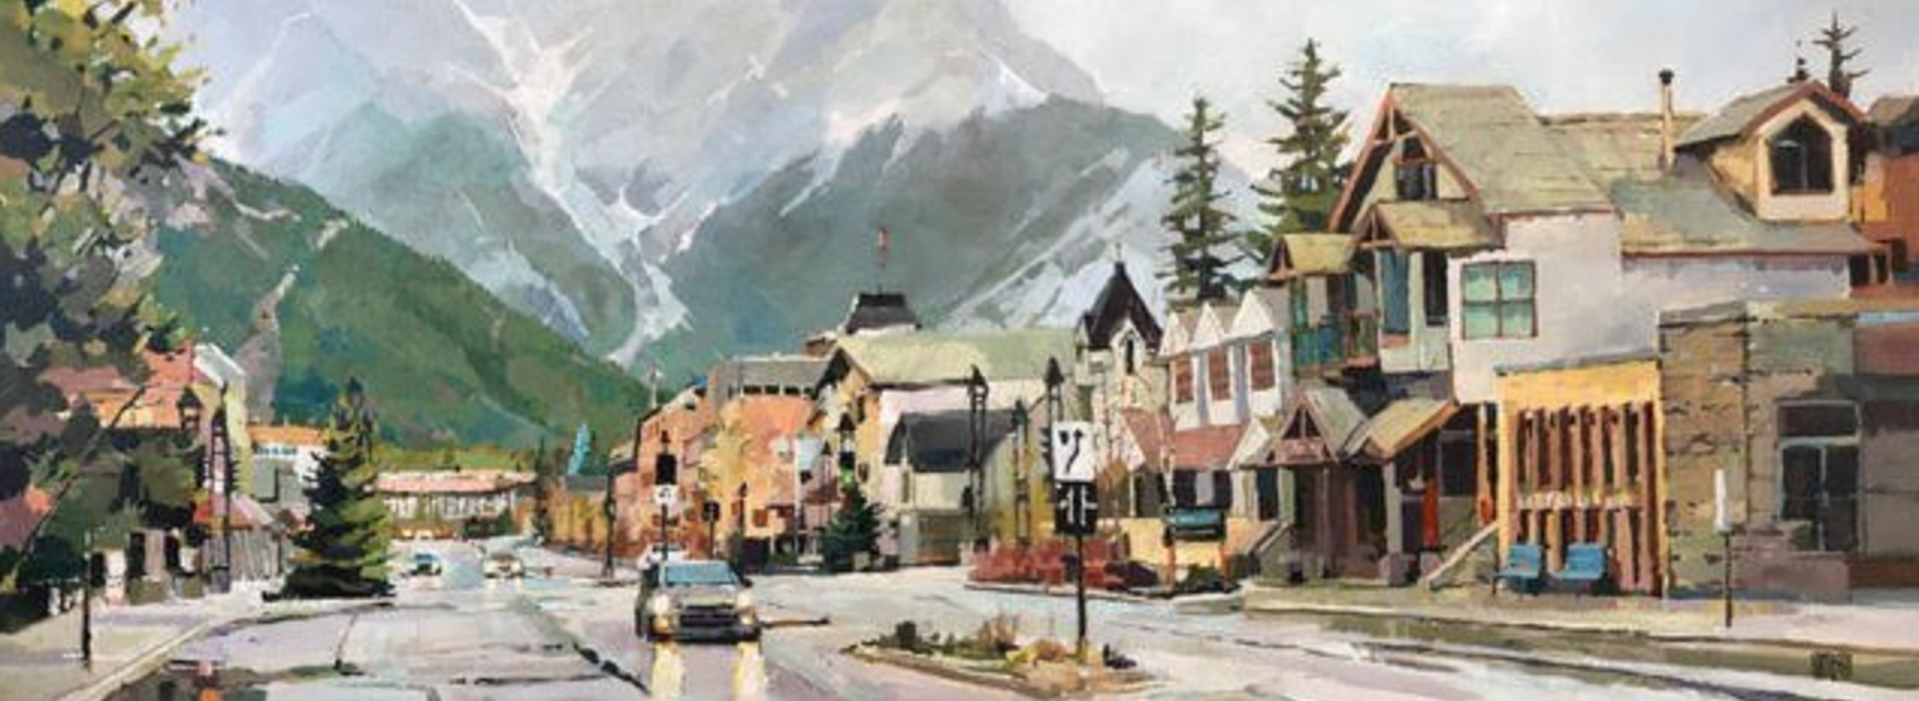 Banff Avenue Rain - SOLD by Randy Hayashi